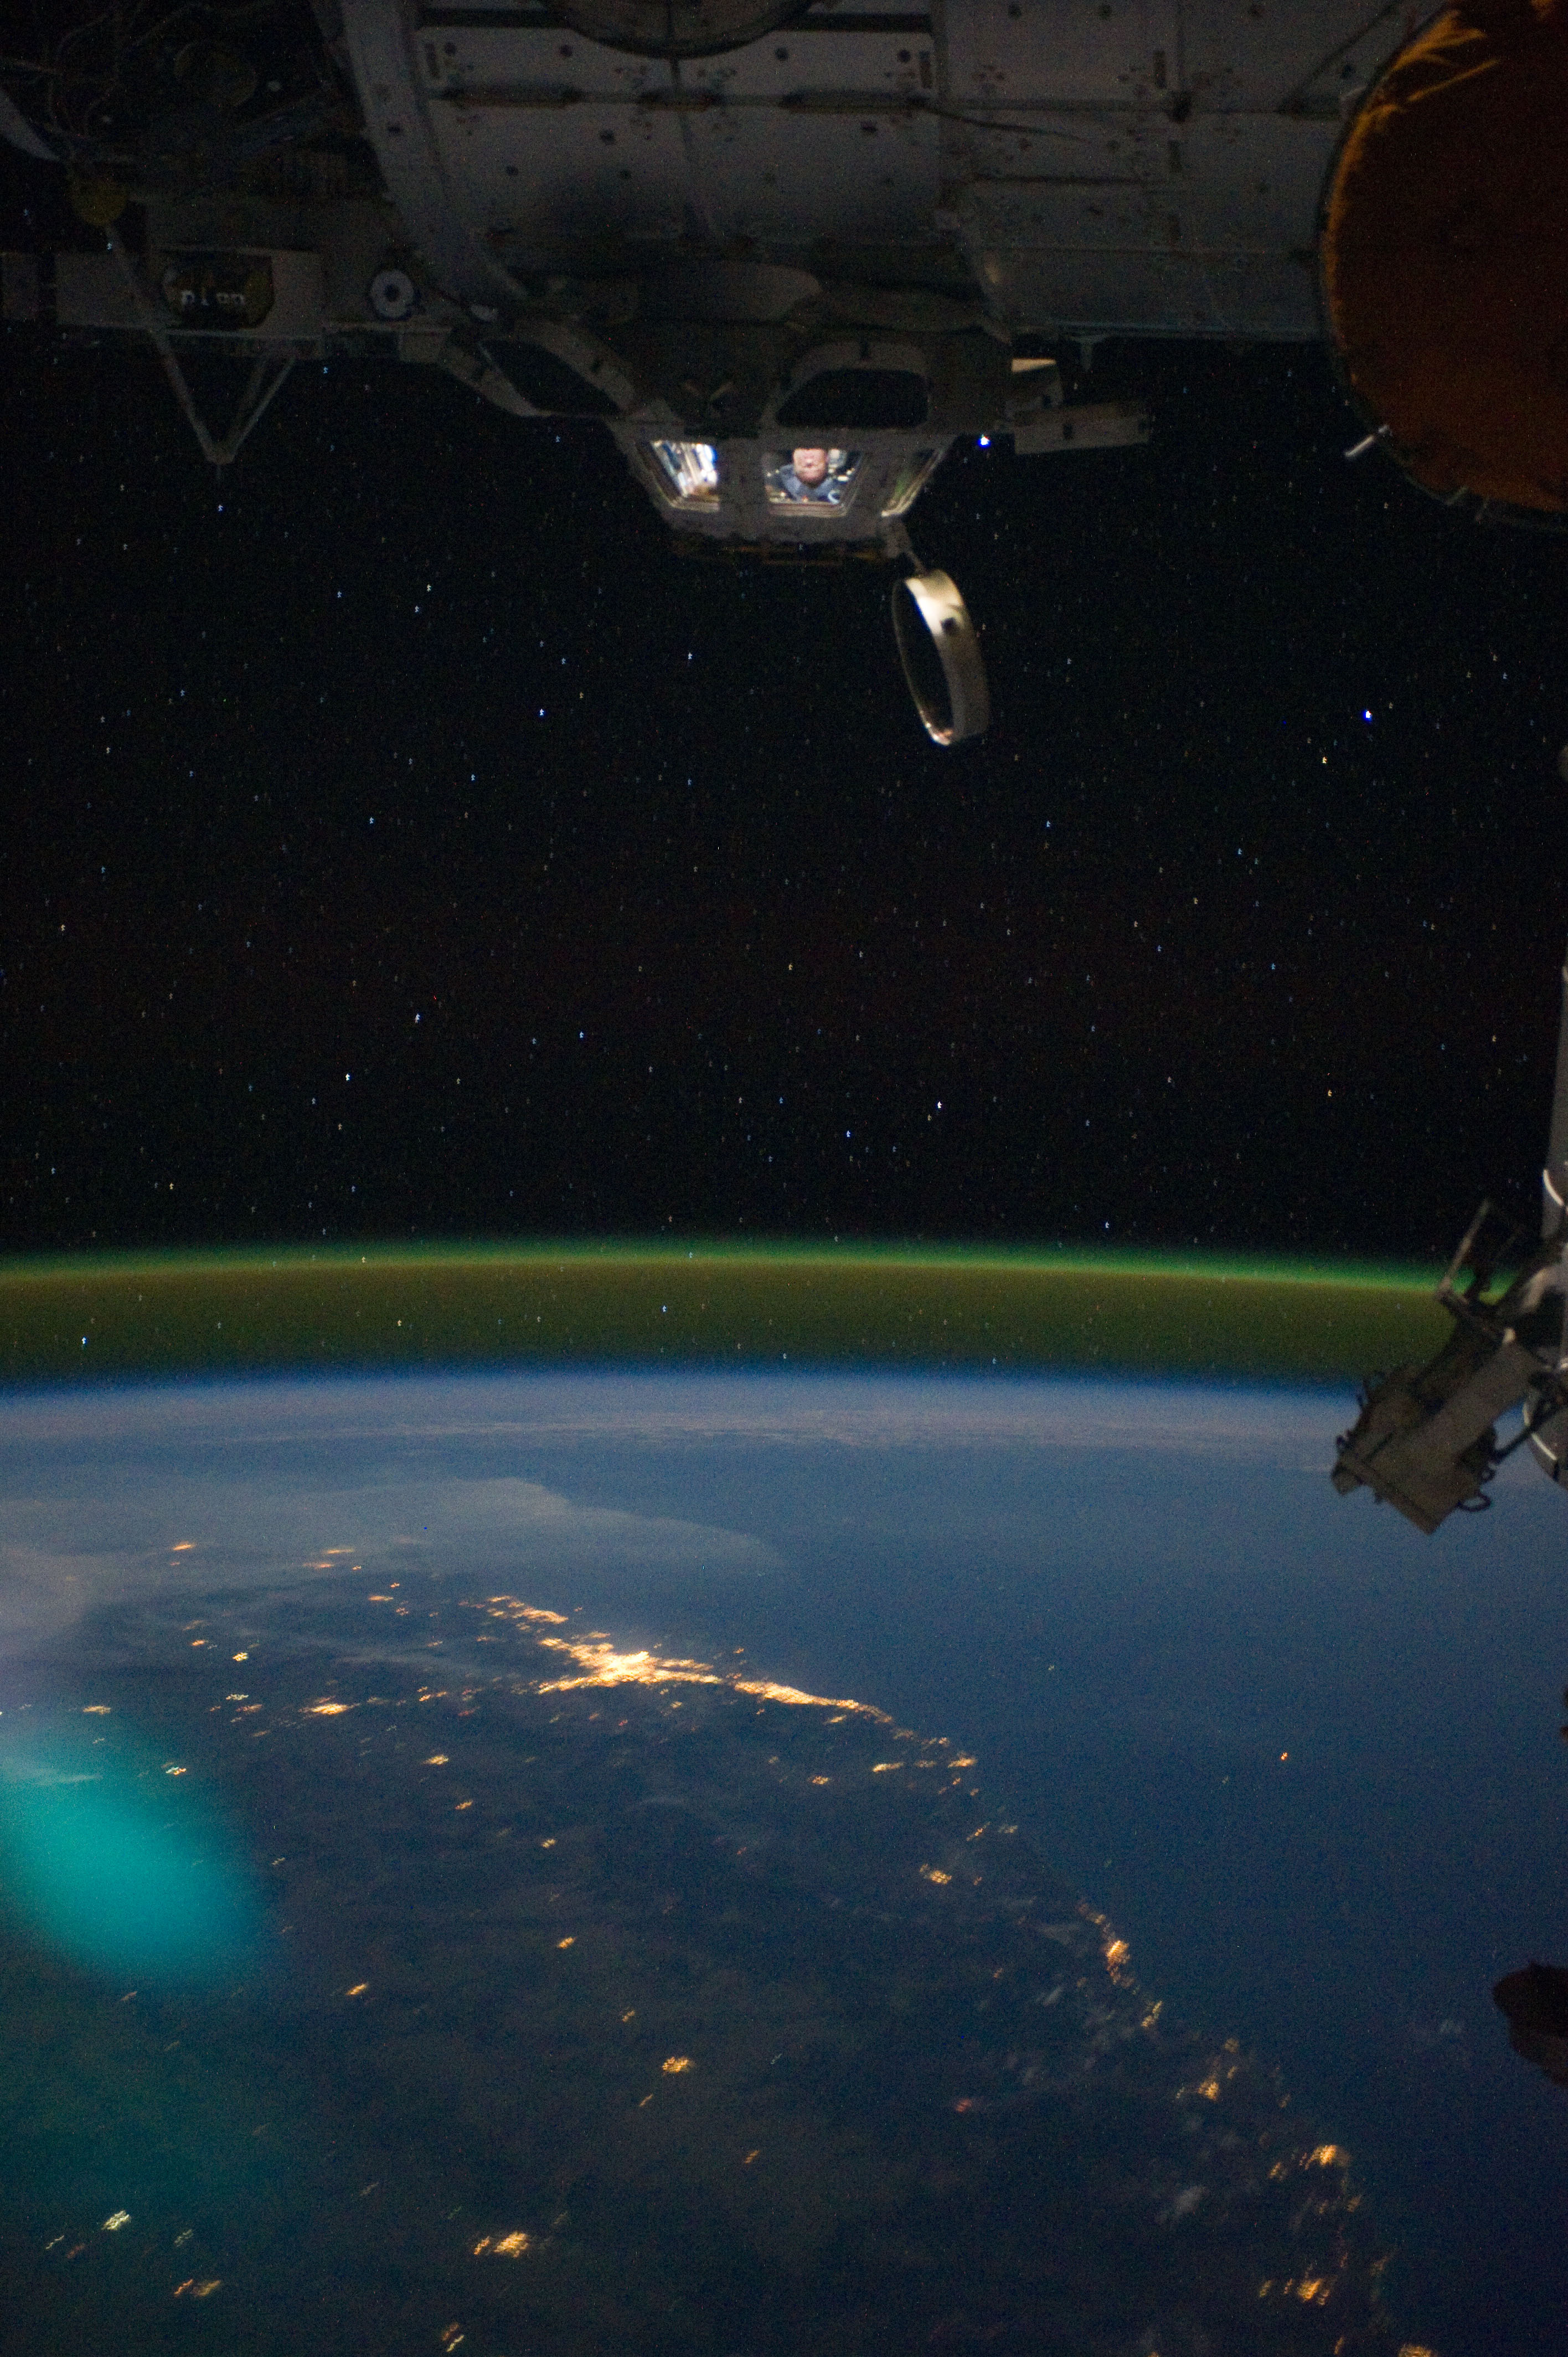 International Space Station's Cupola in orbit over Australia. 15 September 2011.jpg